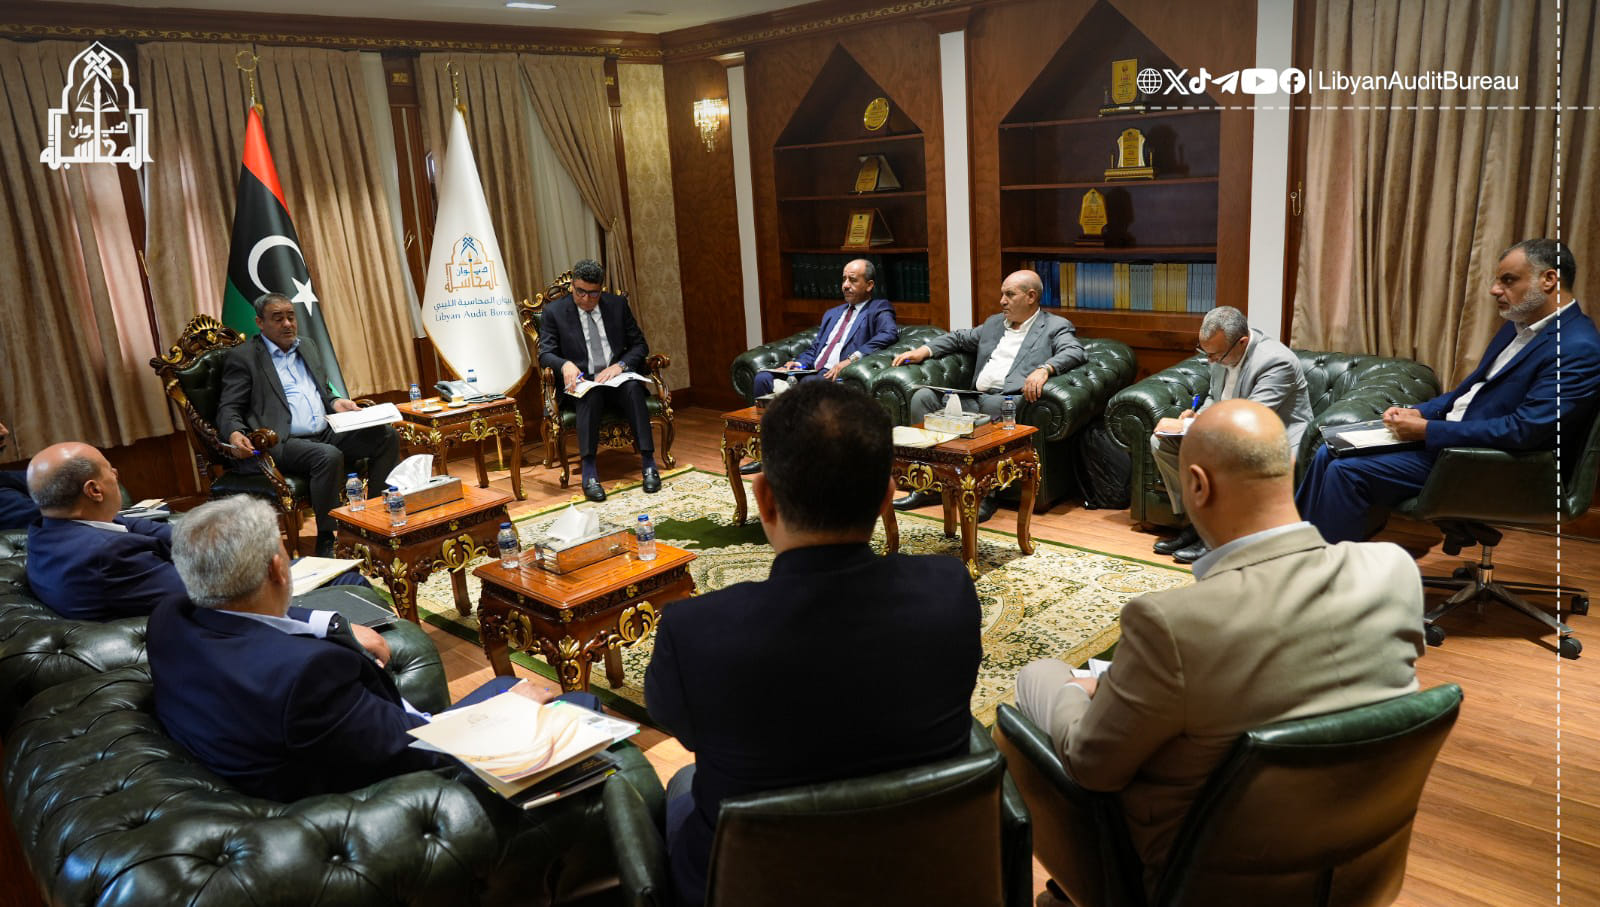 شكشك يناقش مع وزير المواصلات خطة إنقاذ شركة الخطوط الليبية وتذليل الصعوبات التي تواجهها .